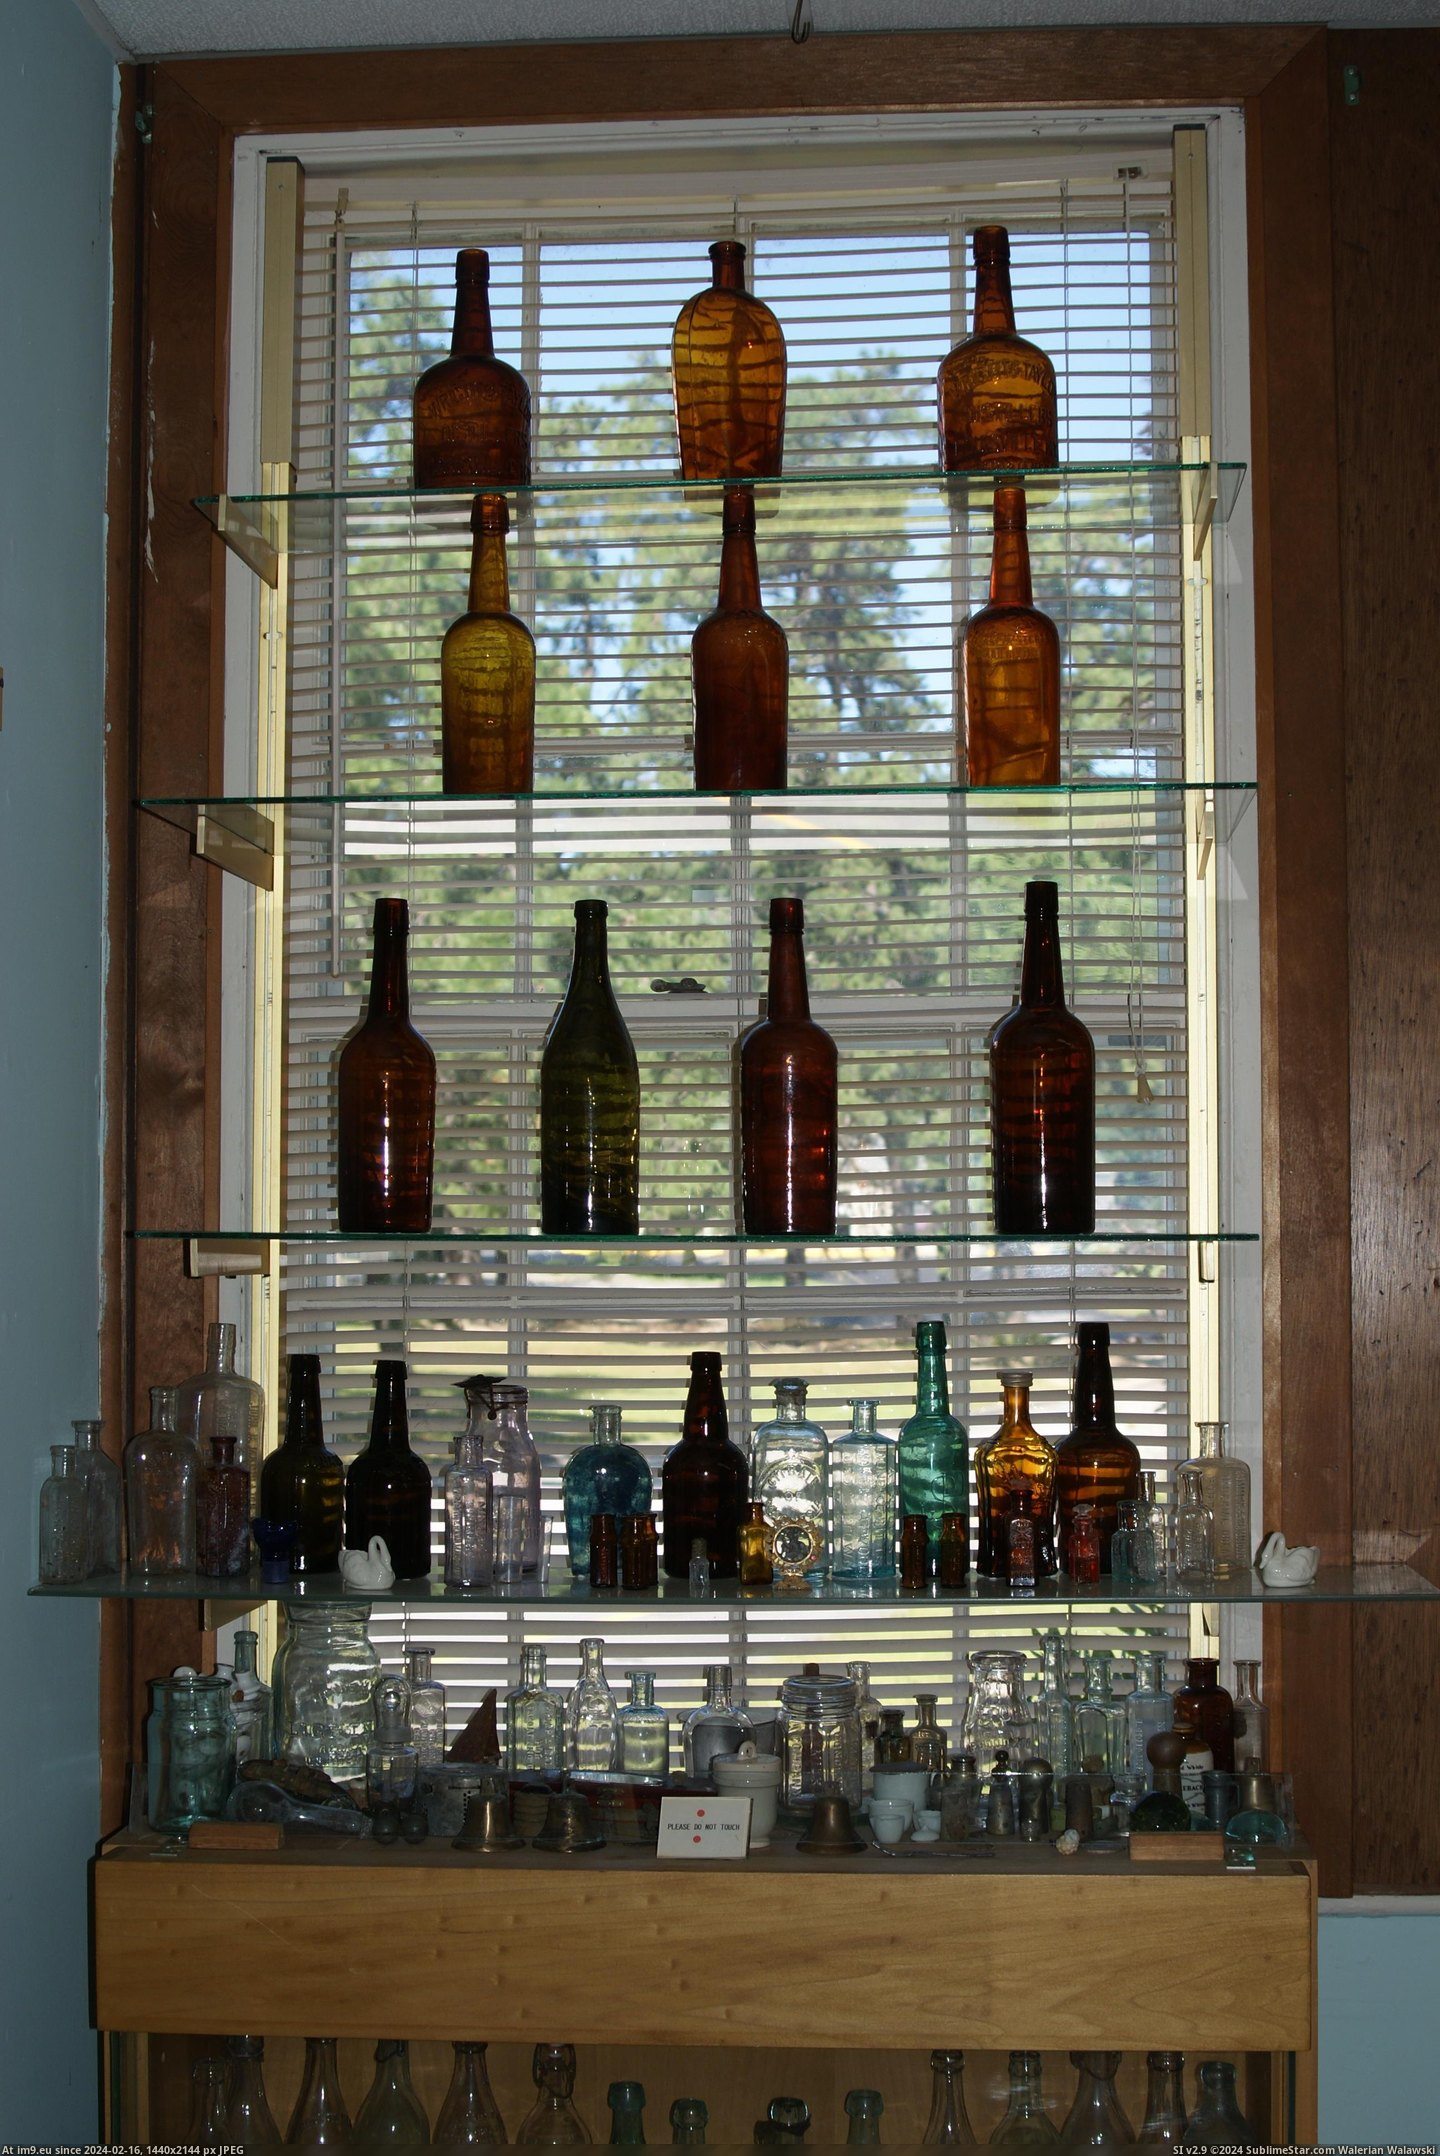 #Museum #Maine #Naples #Bottle MAINE BOTTLE MUSEUM NAPLES (9) Pic. (Bild von album MAINE BOTTLE MUSEUM))